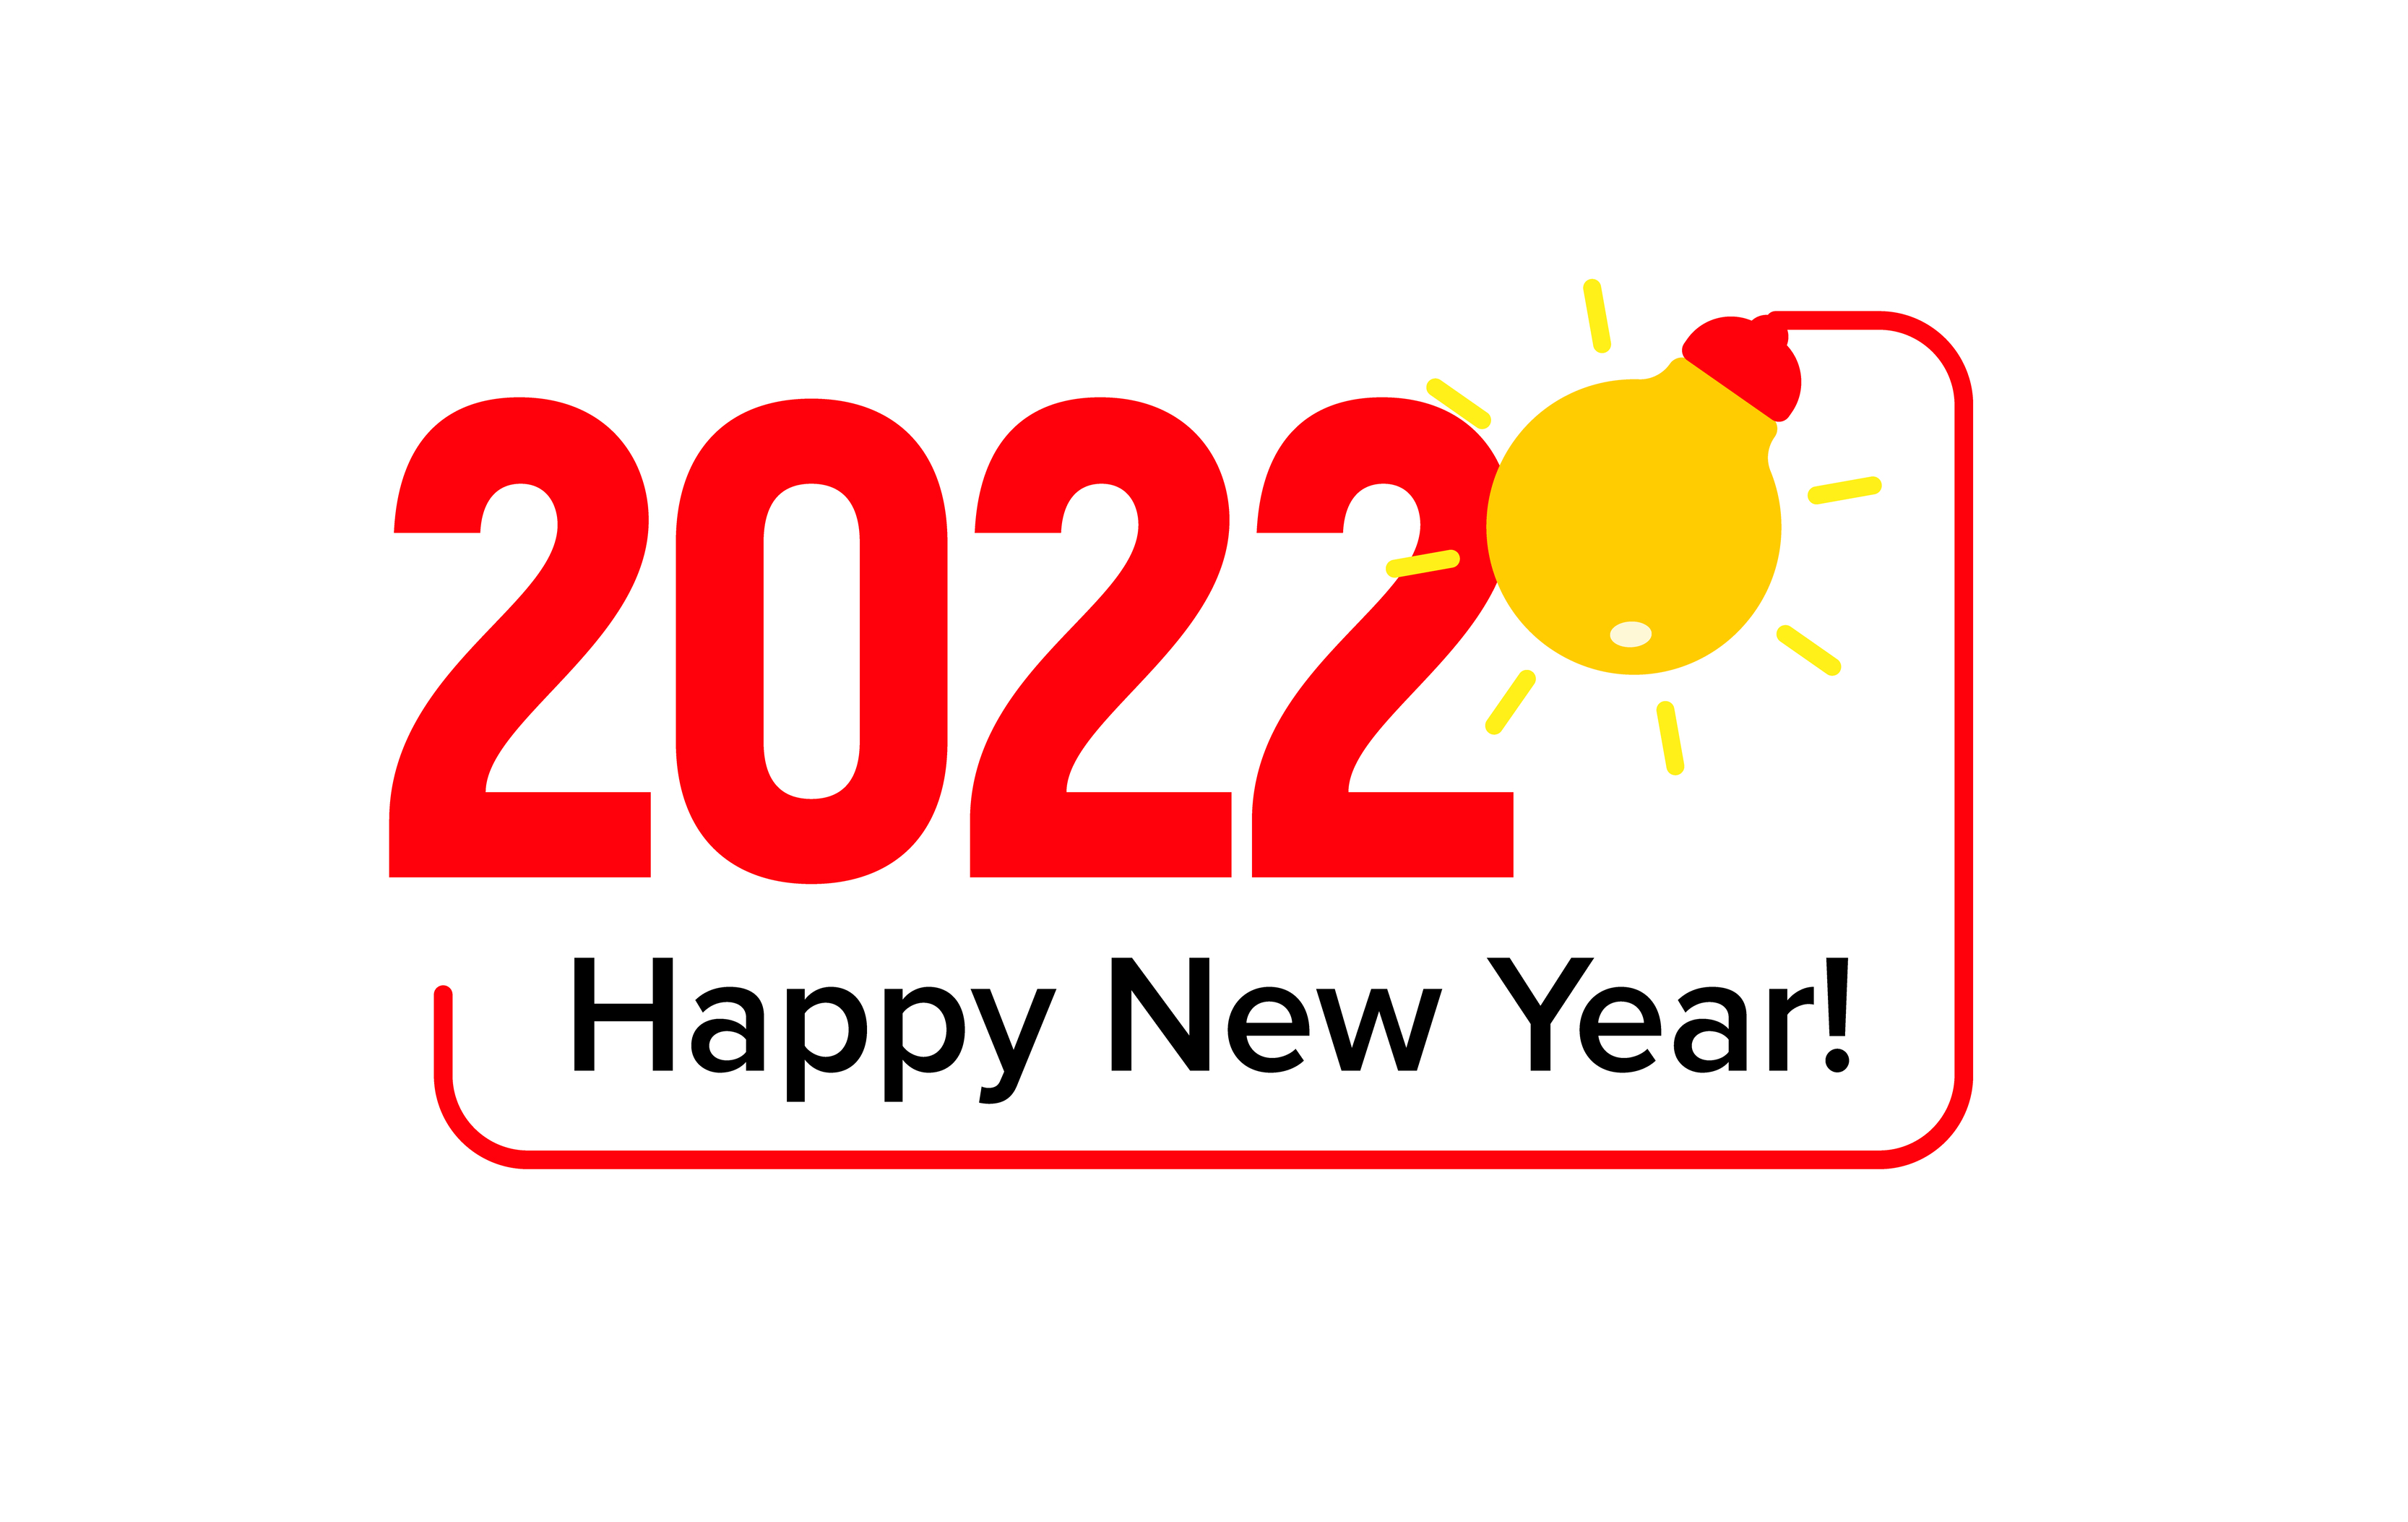 Punt steeg Actief 2022 nummers verlicht door lamplicht in frame, wensen gelukkig nieuwjaar,  creatieve nieuwjaarswenskaart, vectorillustratie 4263365 - Download Free  Vectors, Vector Bestanden, Ontwerpen Templates